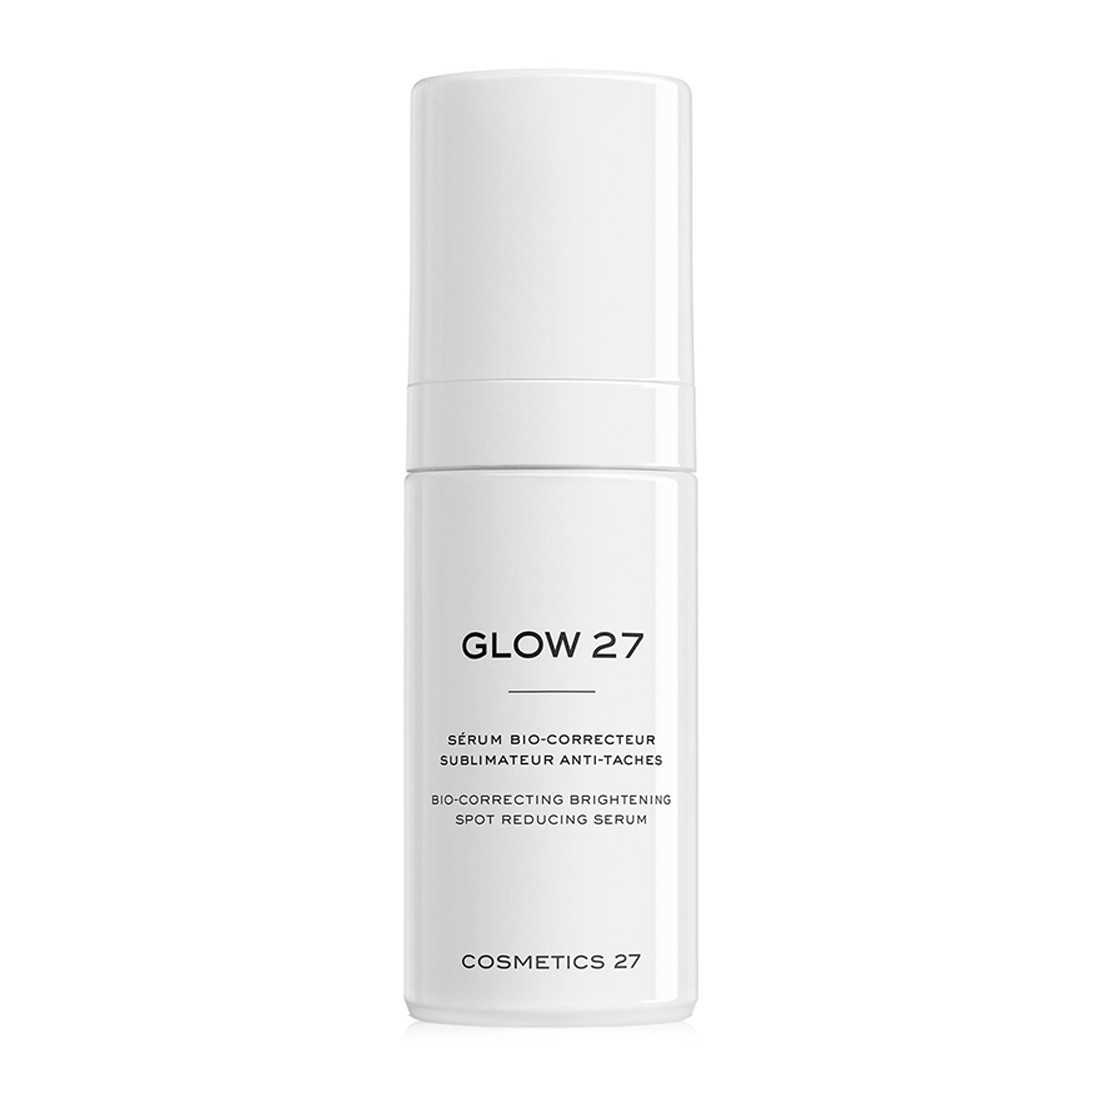 Cosmetics 27 Glow 27 Bio-Correcting Brightening Spot Reducing Serum - Освітлювальна біосироватка для боротьби з пігментацією